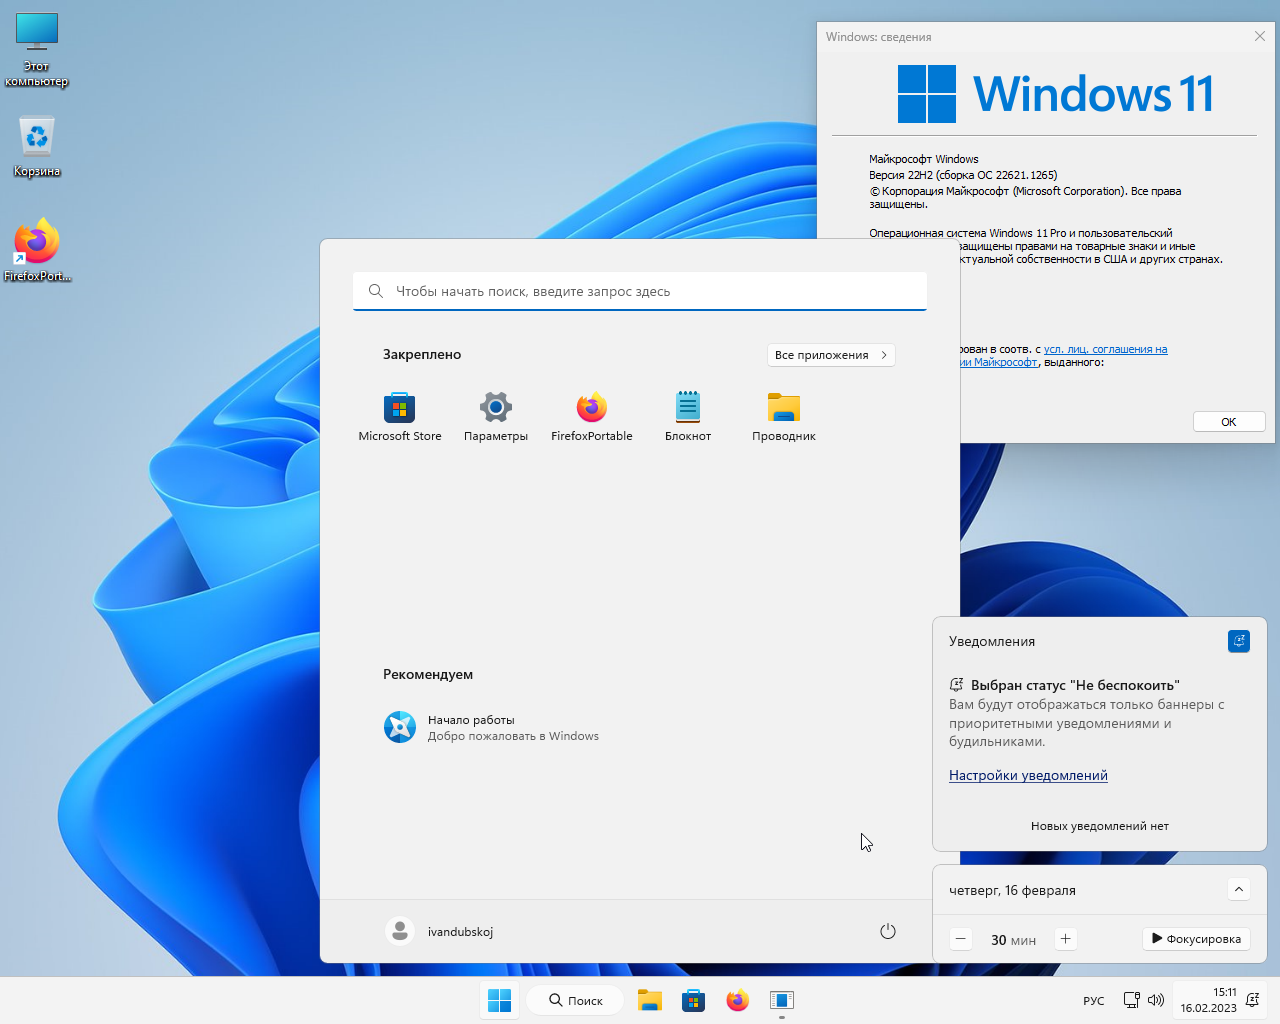 Windows 11 Pro VL x64 22Н2 (build 22621.1265) by ivandubskoj 16.02.2023 [Ru]